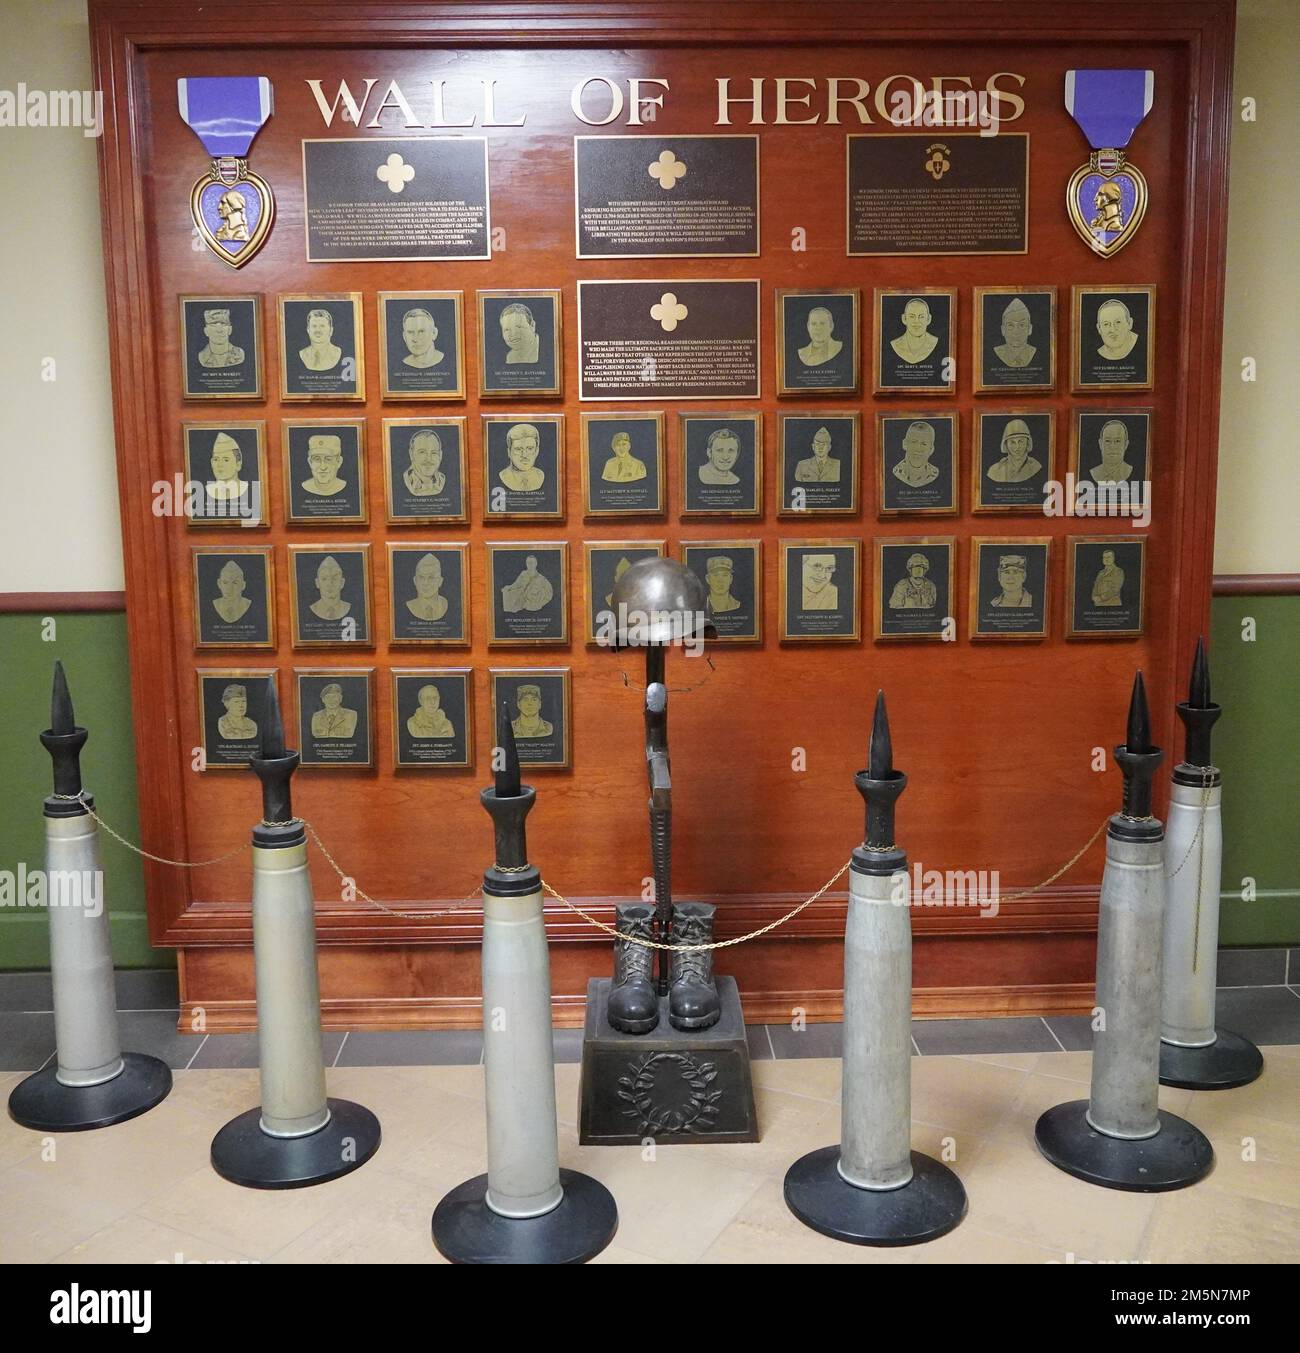 Il Muro degli Eroi presso la 88th Readiness Division, Fort McCoy, Wisconsin, onora i soldati dell'unità che sono stati uccisi servendo il loro paese. Foto Stock